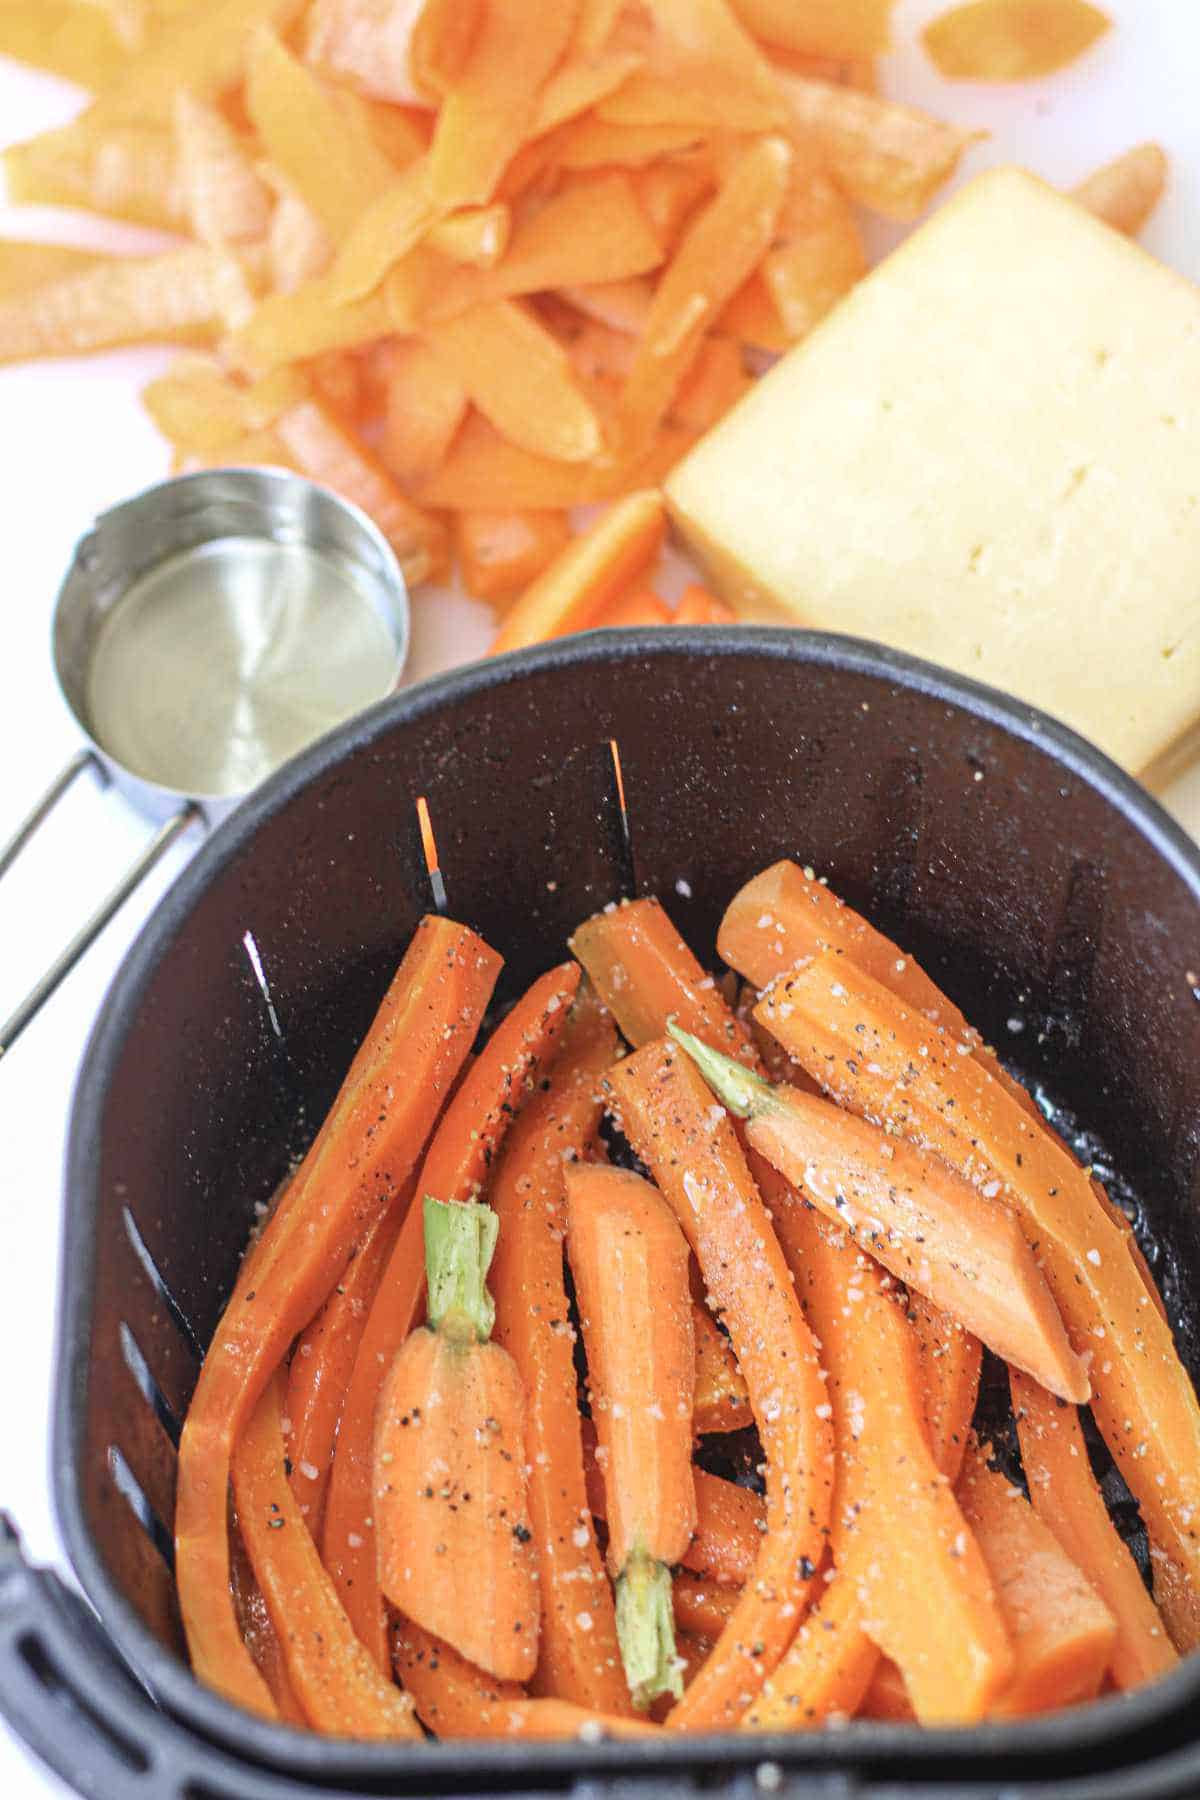 seasoned carrots in an air fryer basket.